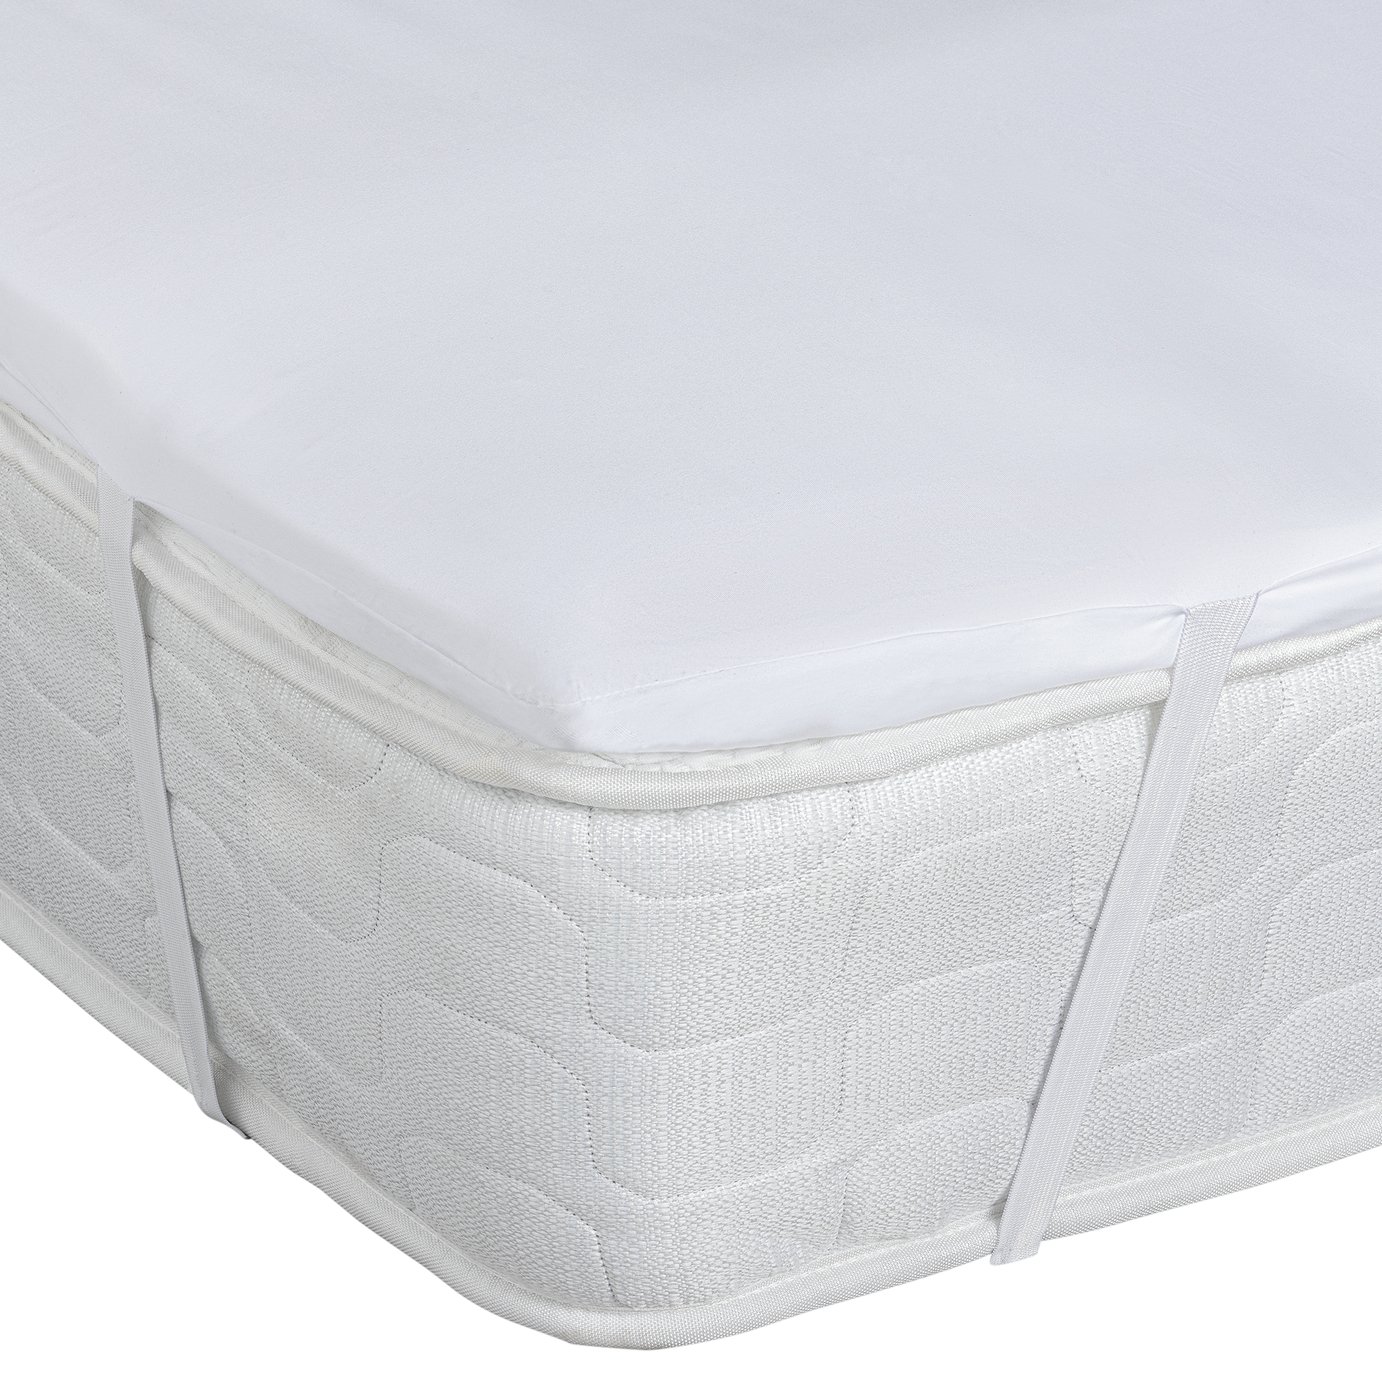 5cm memory foam mattress topper ebay